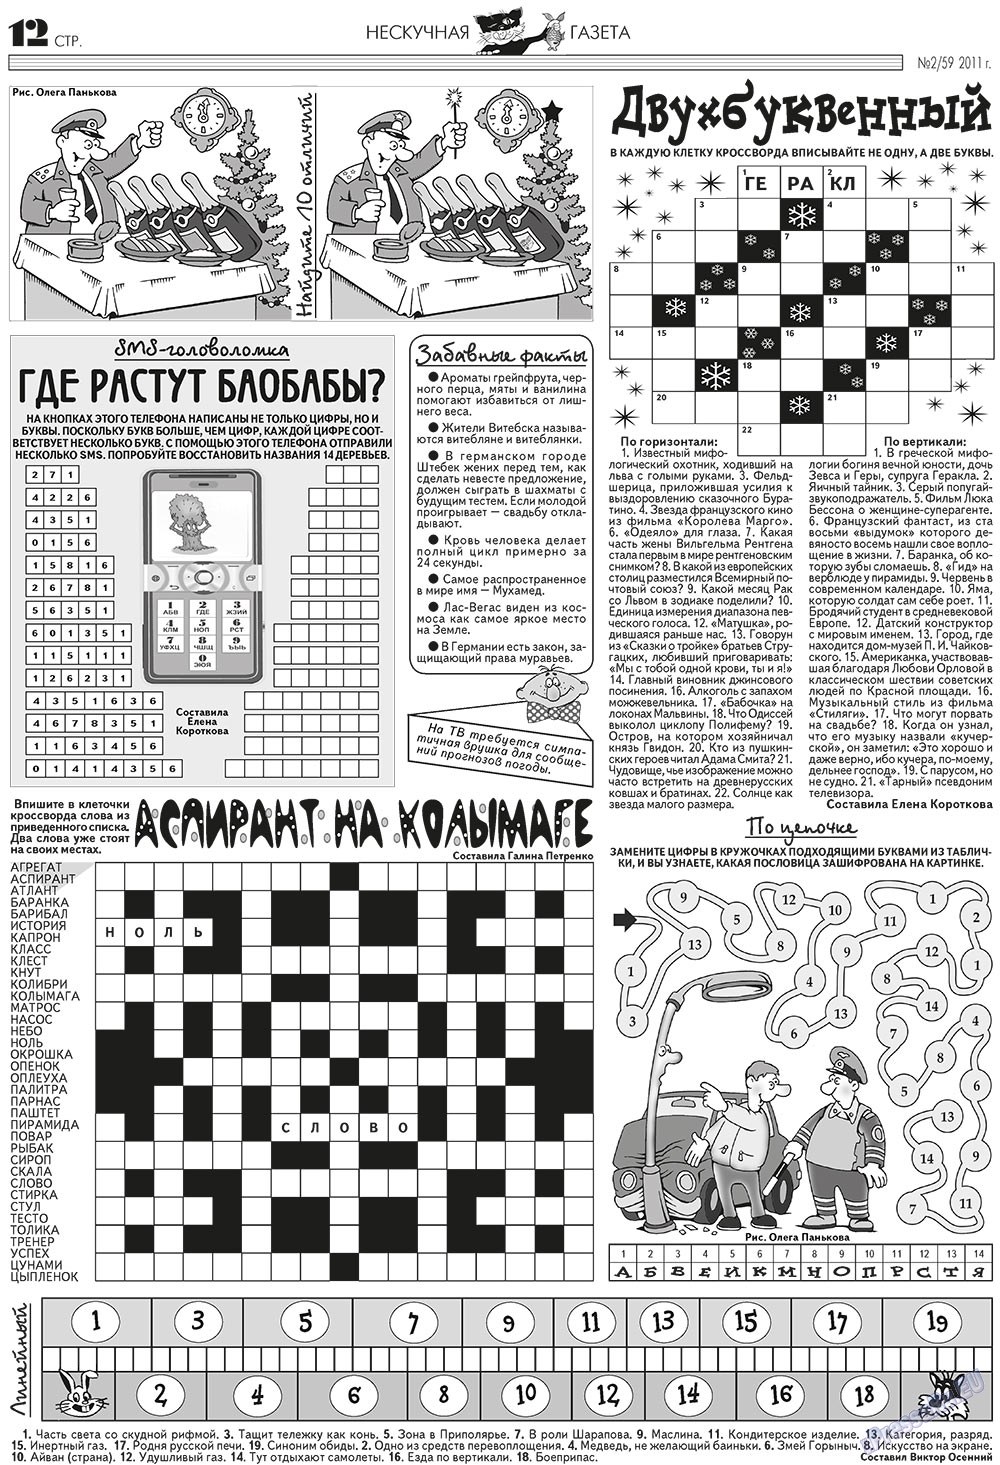 Нескучная газета (журнал). 2011 год, номер 2, стр. 12